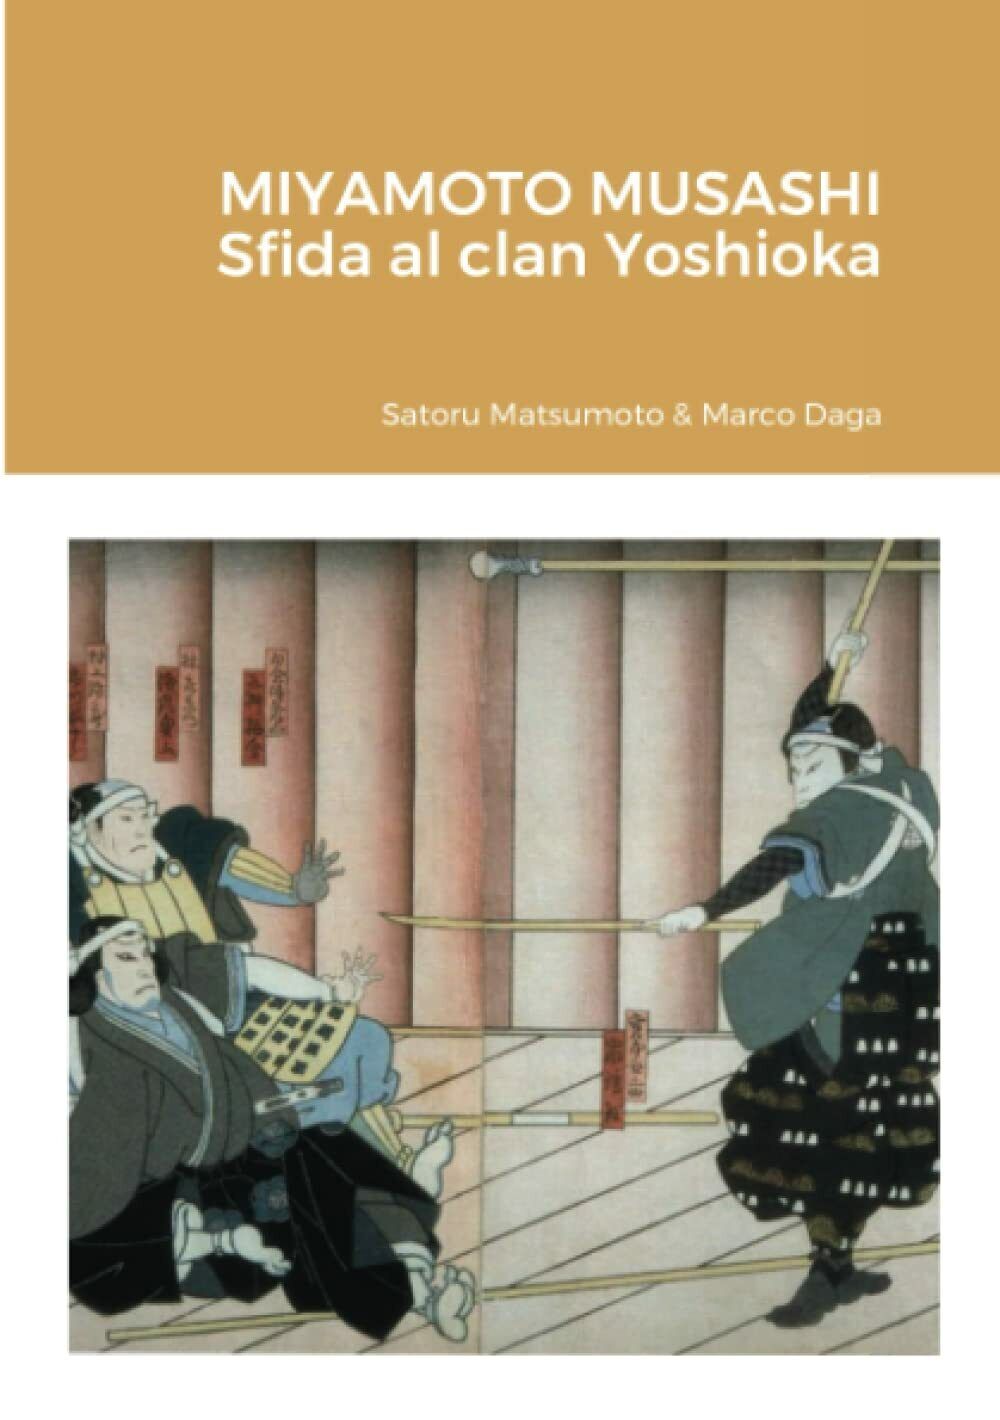 Miyamoto Musashi: sfida al clan Yoshioka - Satoru Matsumoto, Marco Daga - 2020